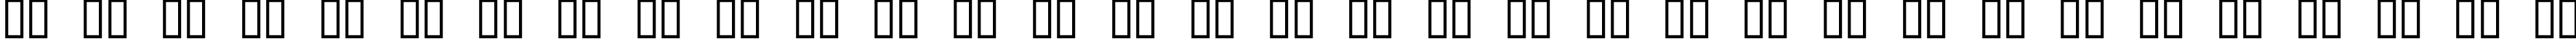 Пример написания русского алфавита шрифтом DextorC